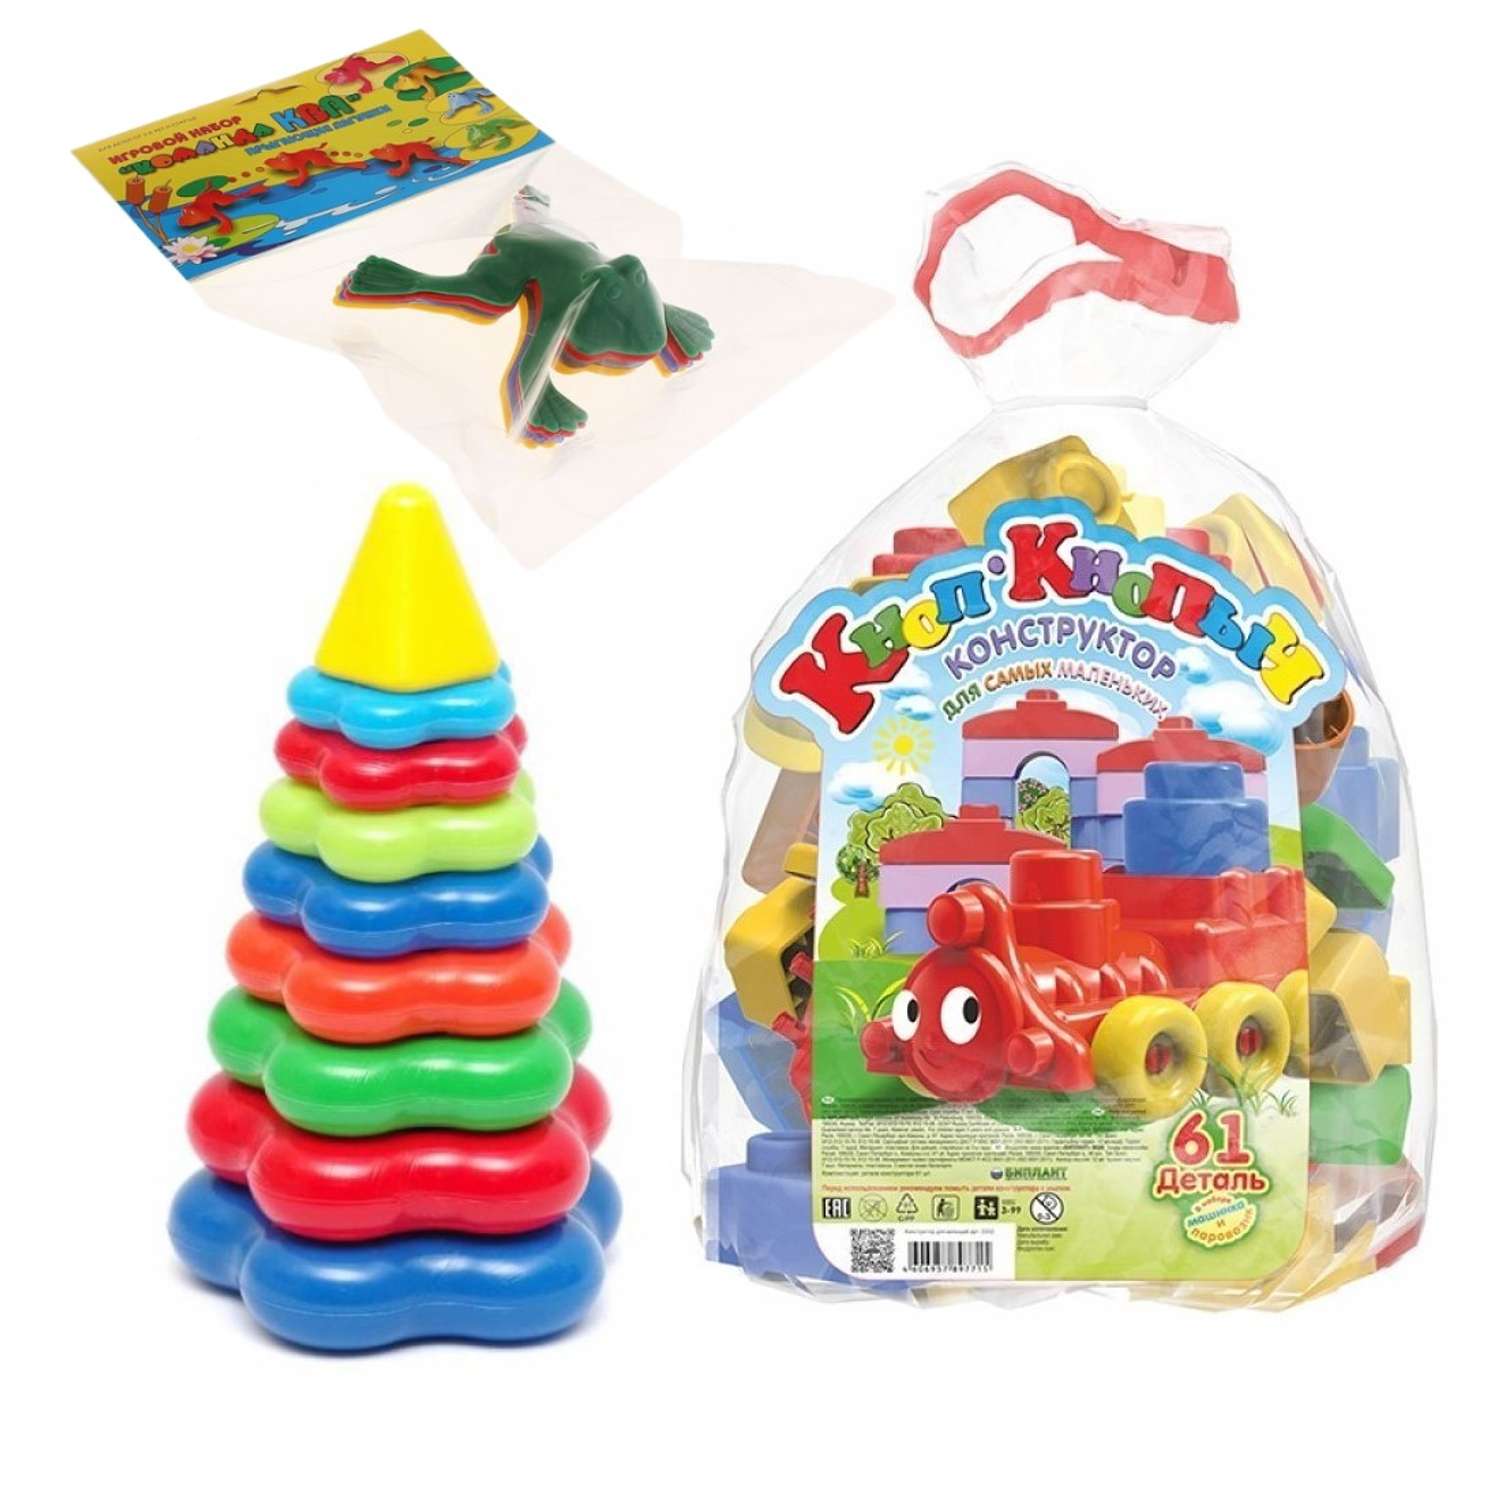 Развивающие игрушки БИПЛАНТ для малышей конструктор Кноп-Кнопыч 61 деталь + Пирамидка большая + Команда КВА - фото 1